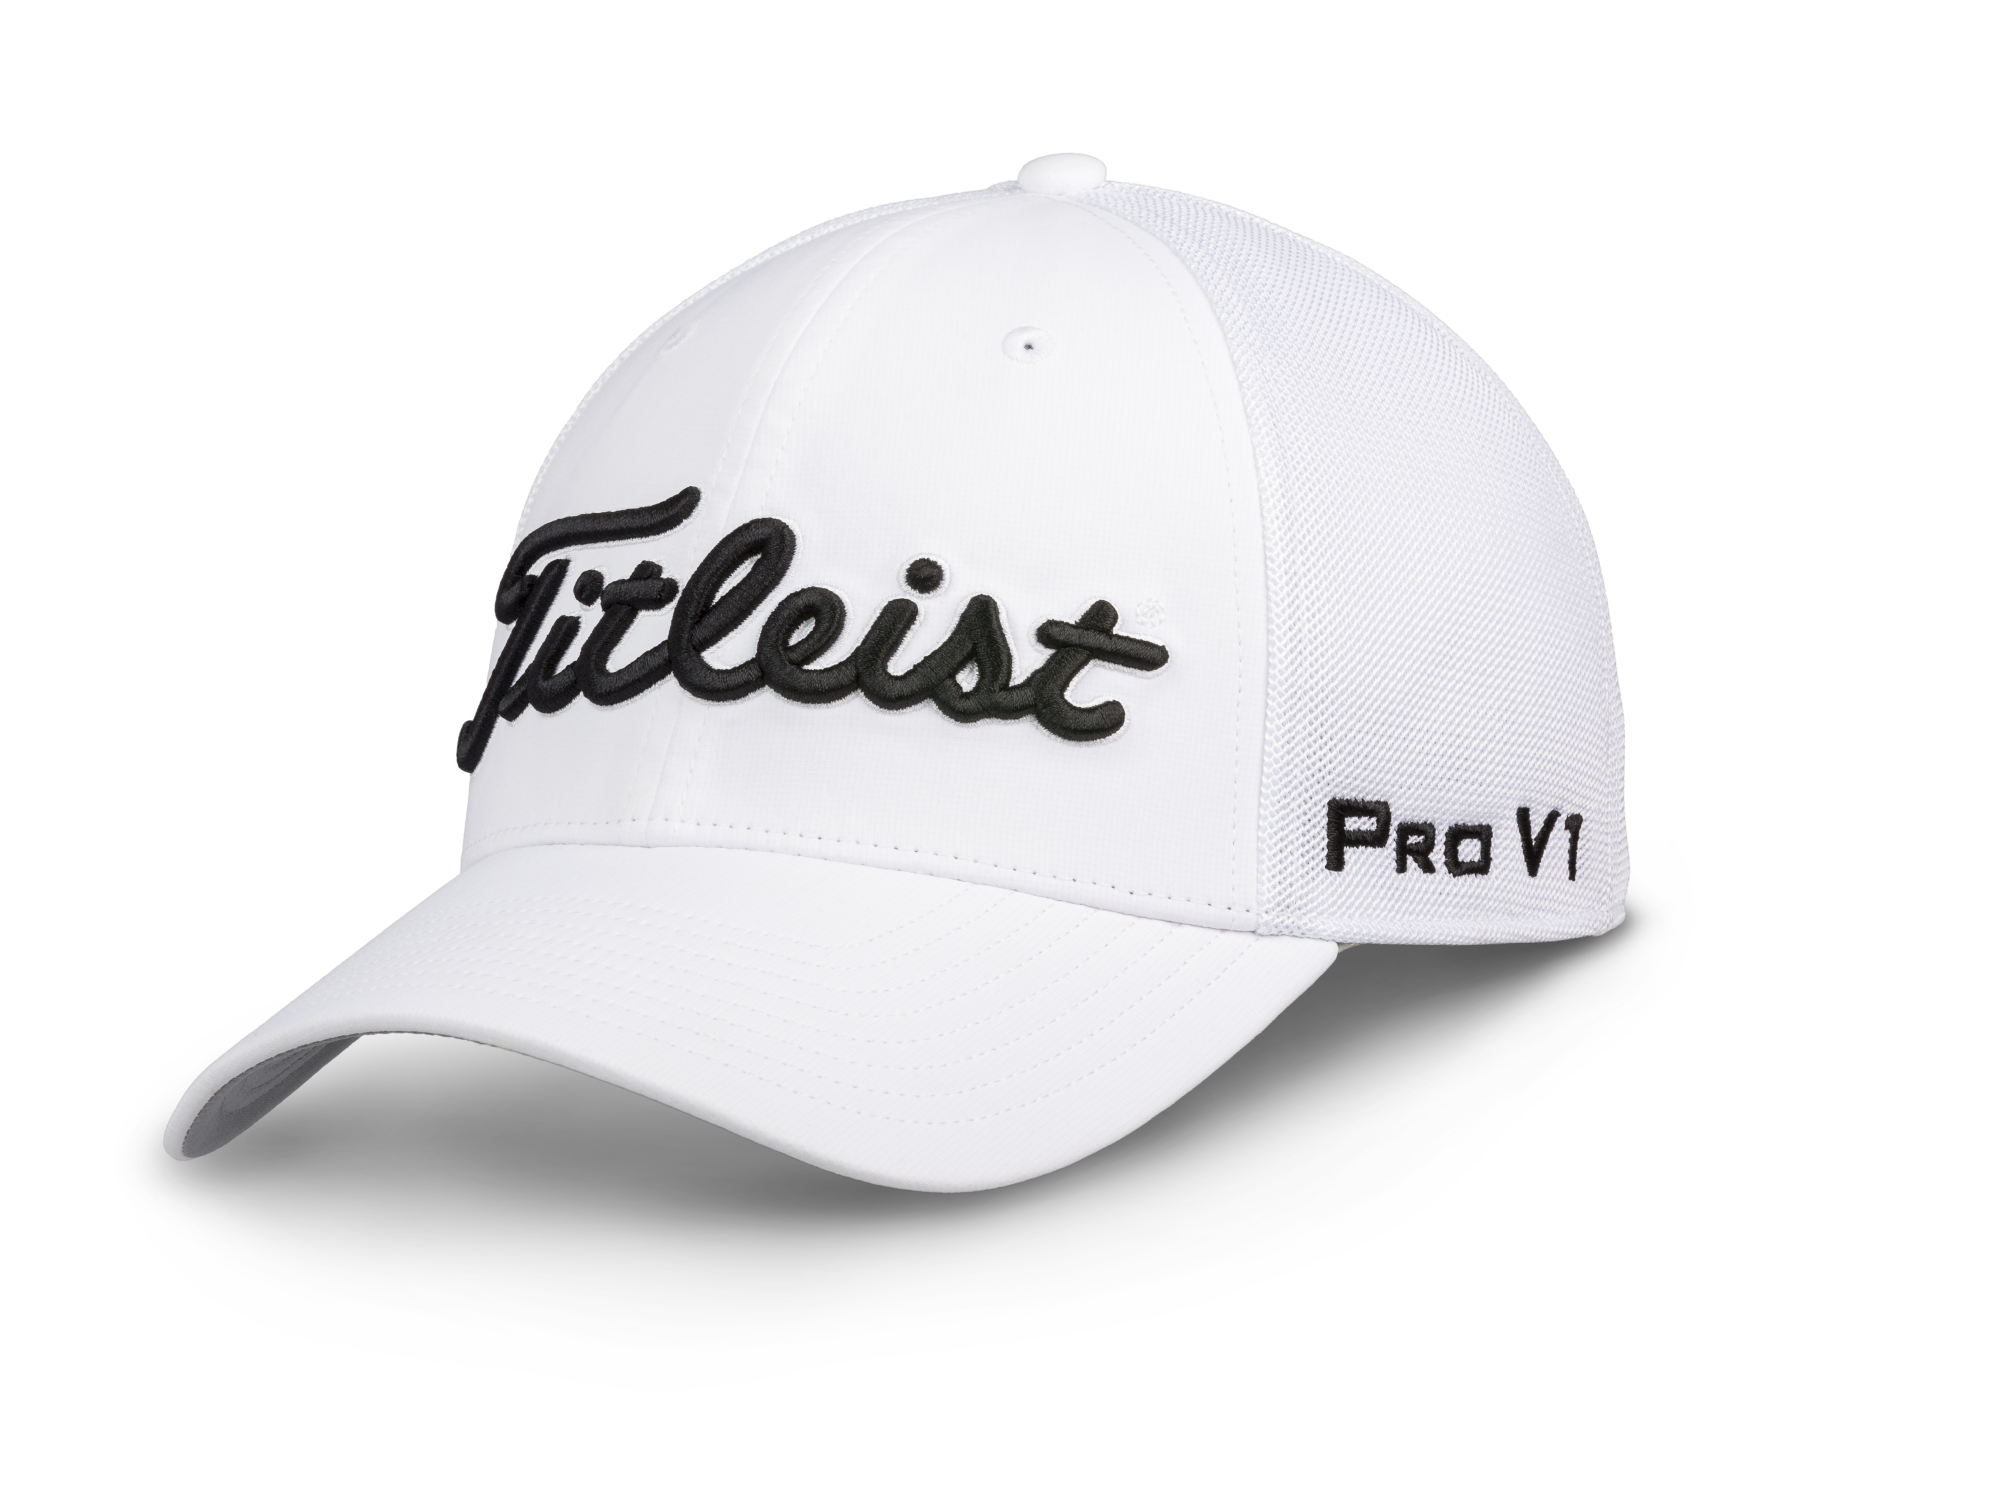 Titleist Tour Sports Mesh golfová čepice, bílá/černá, vel. L/XL